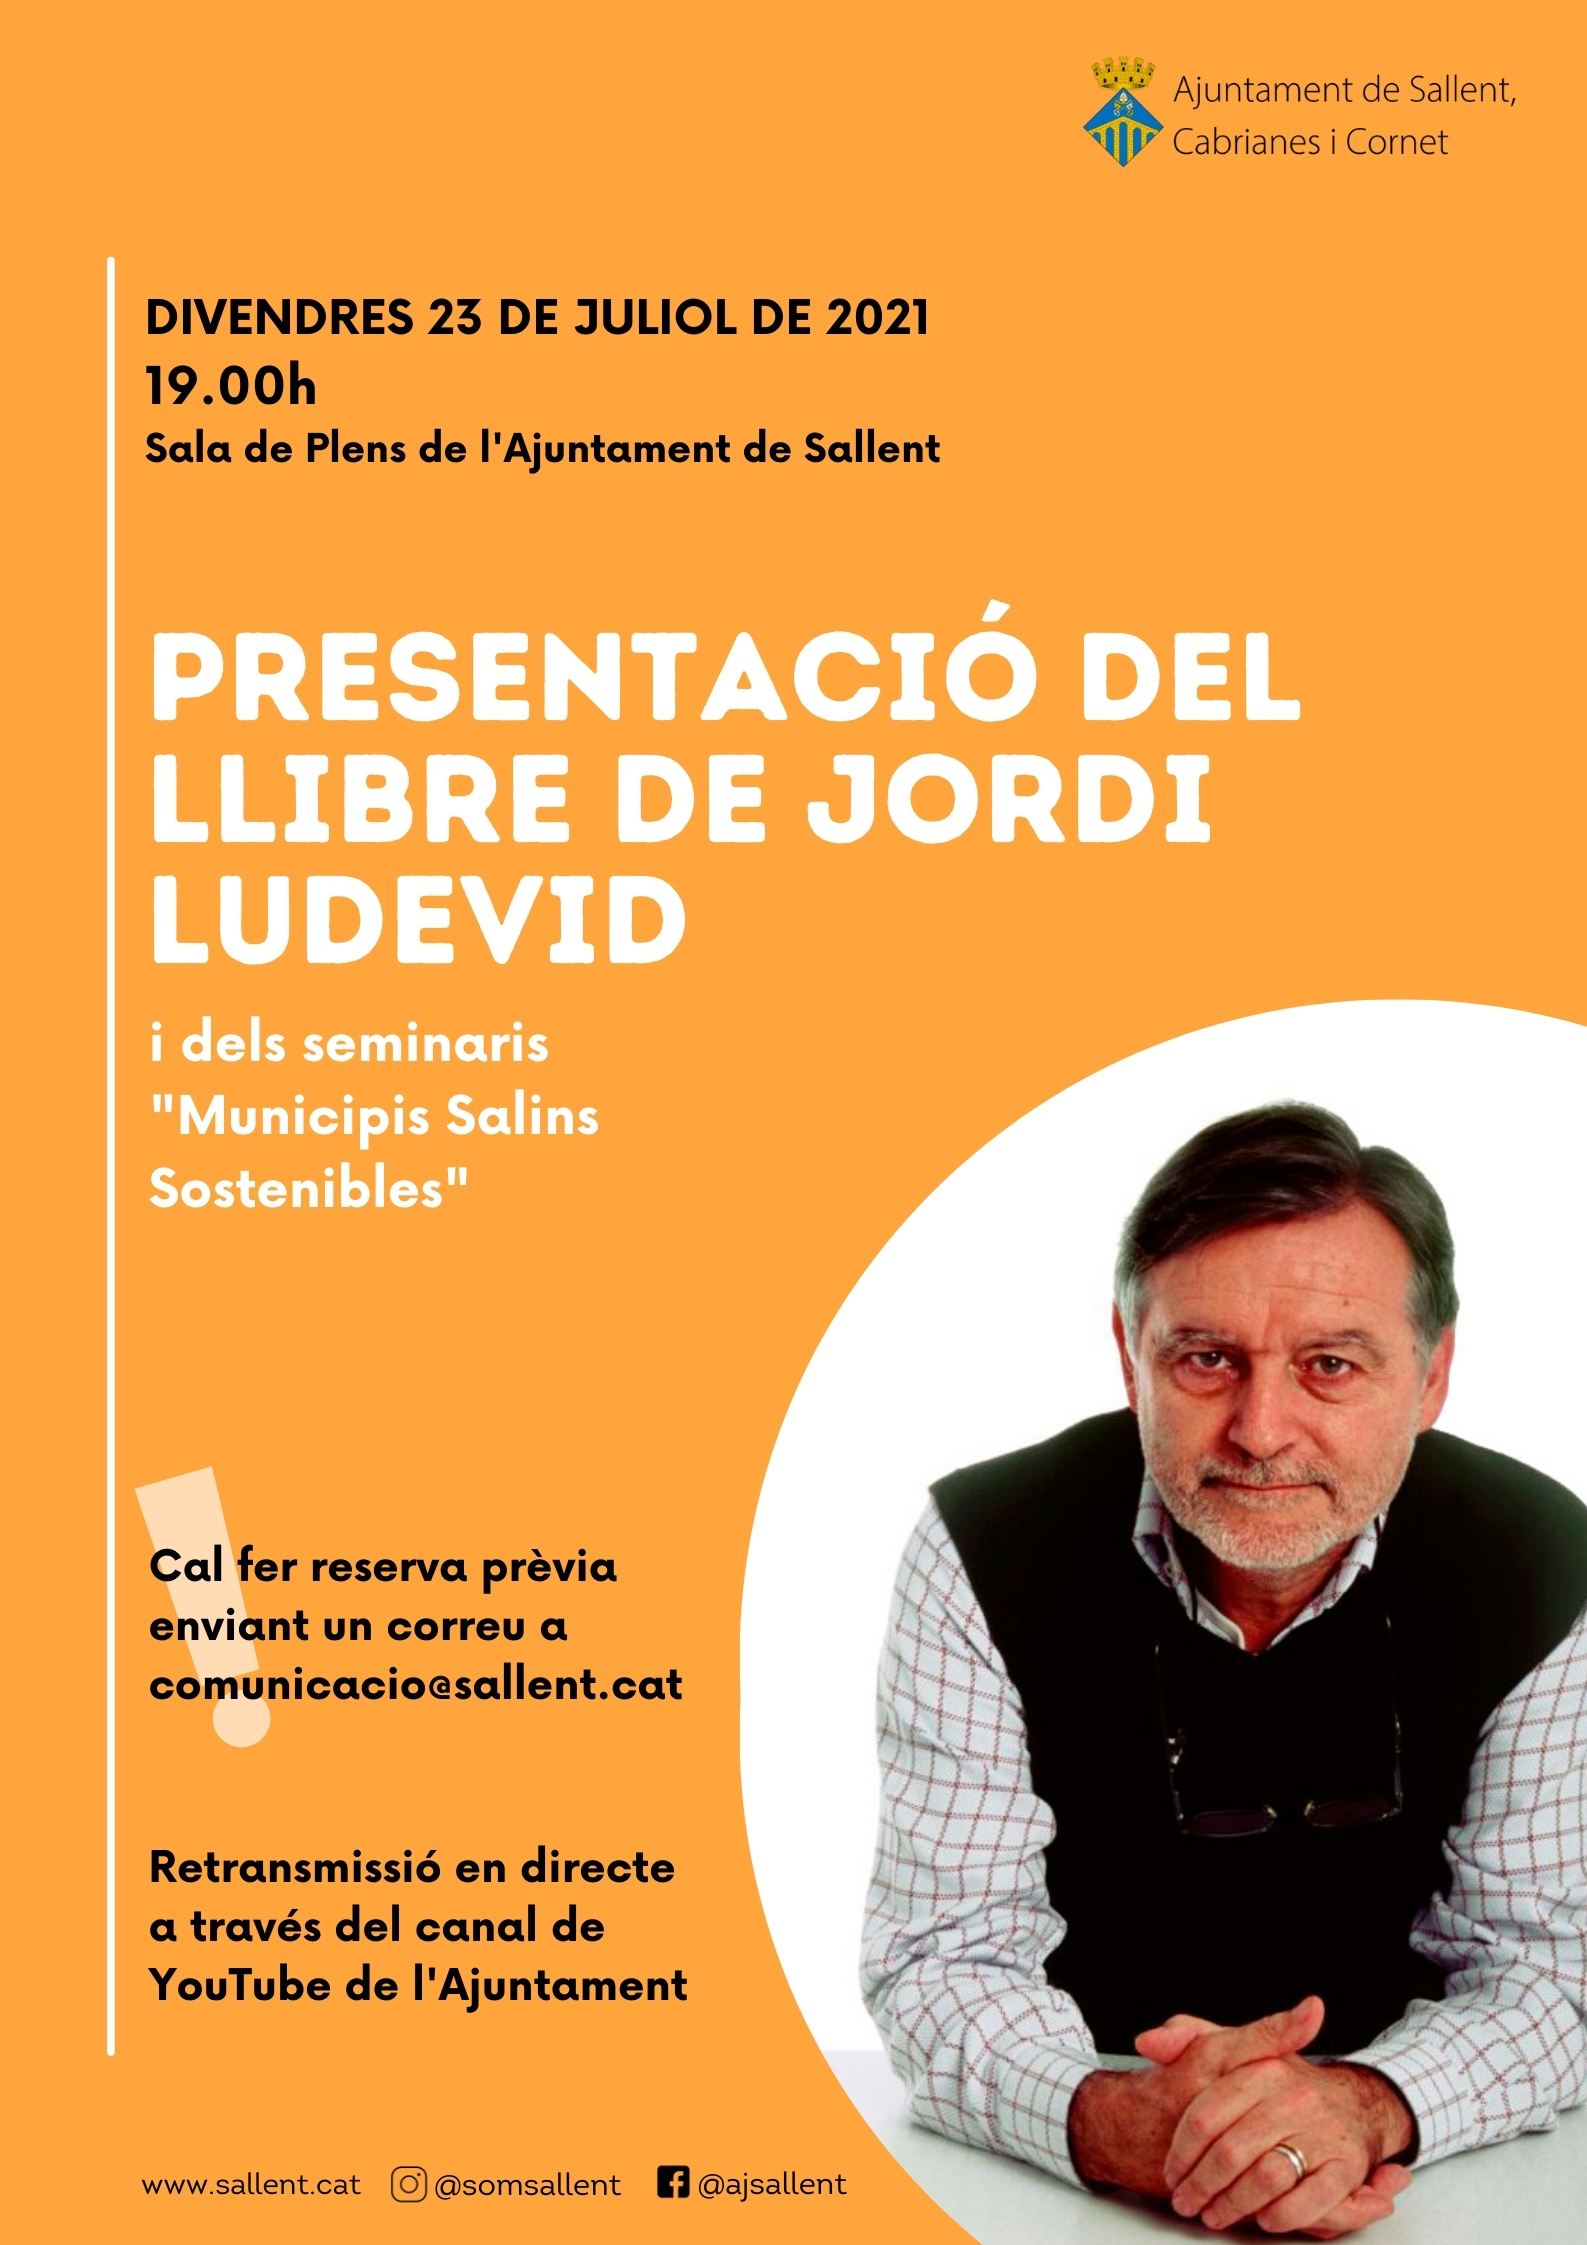 Presentació del llibre de Jordi Ludevid